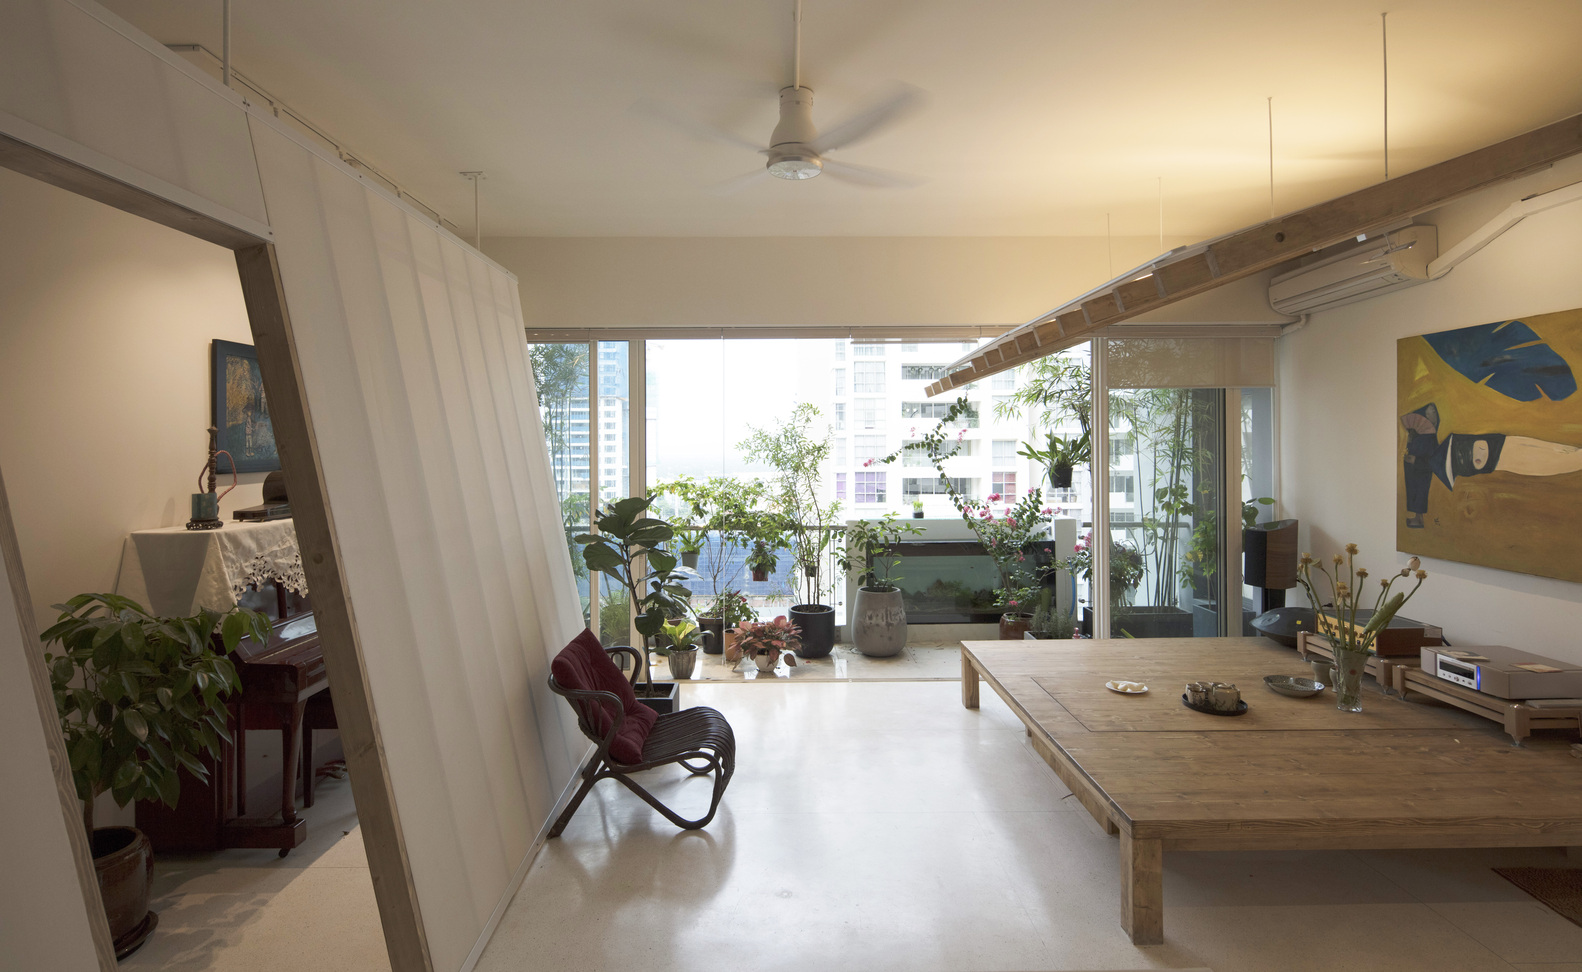 hình ảnh toàn cảnh phòng sinh hoạt chung trong căn hộ với phản gỗ, cây xanh ngập tràn, tường kính, ghế thư giãn